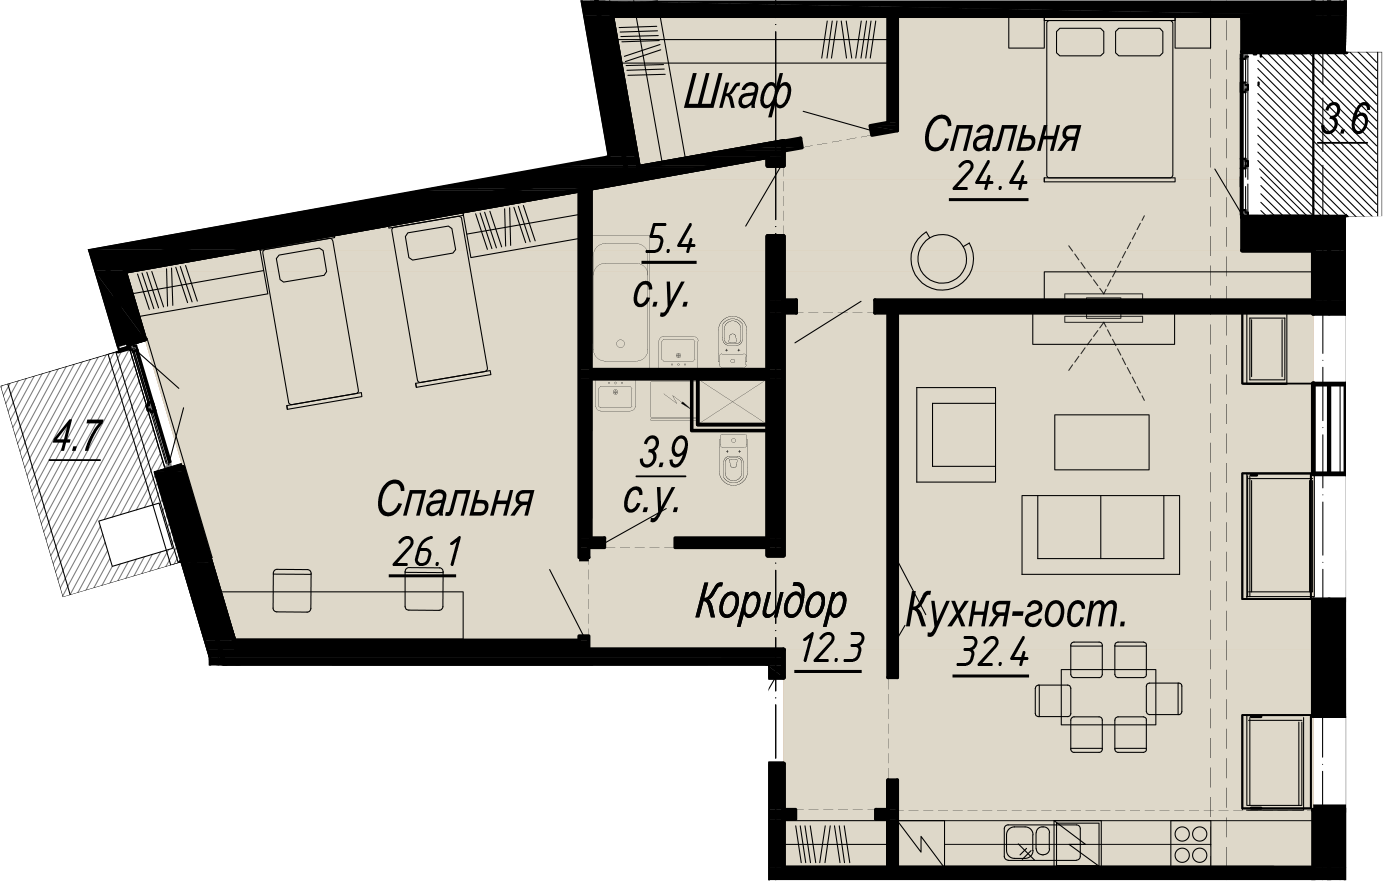 2-комнатная квартира  №13-7 в Meltzer Hall: 110.48 м², этаж 7 - купить в Санкт-Петербурге